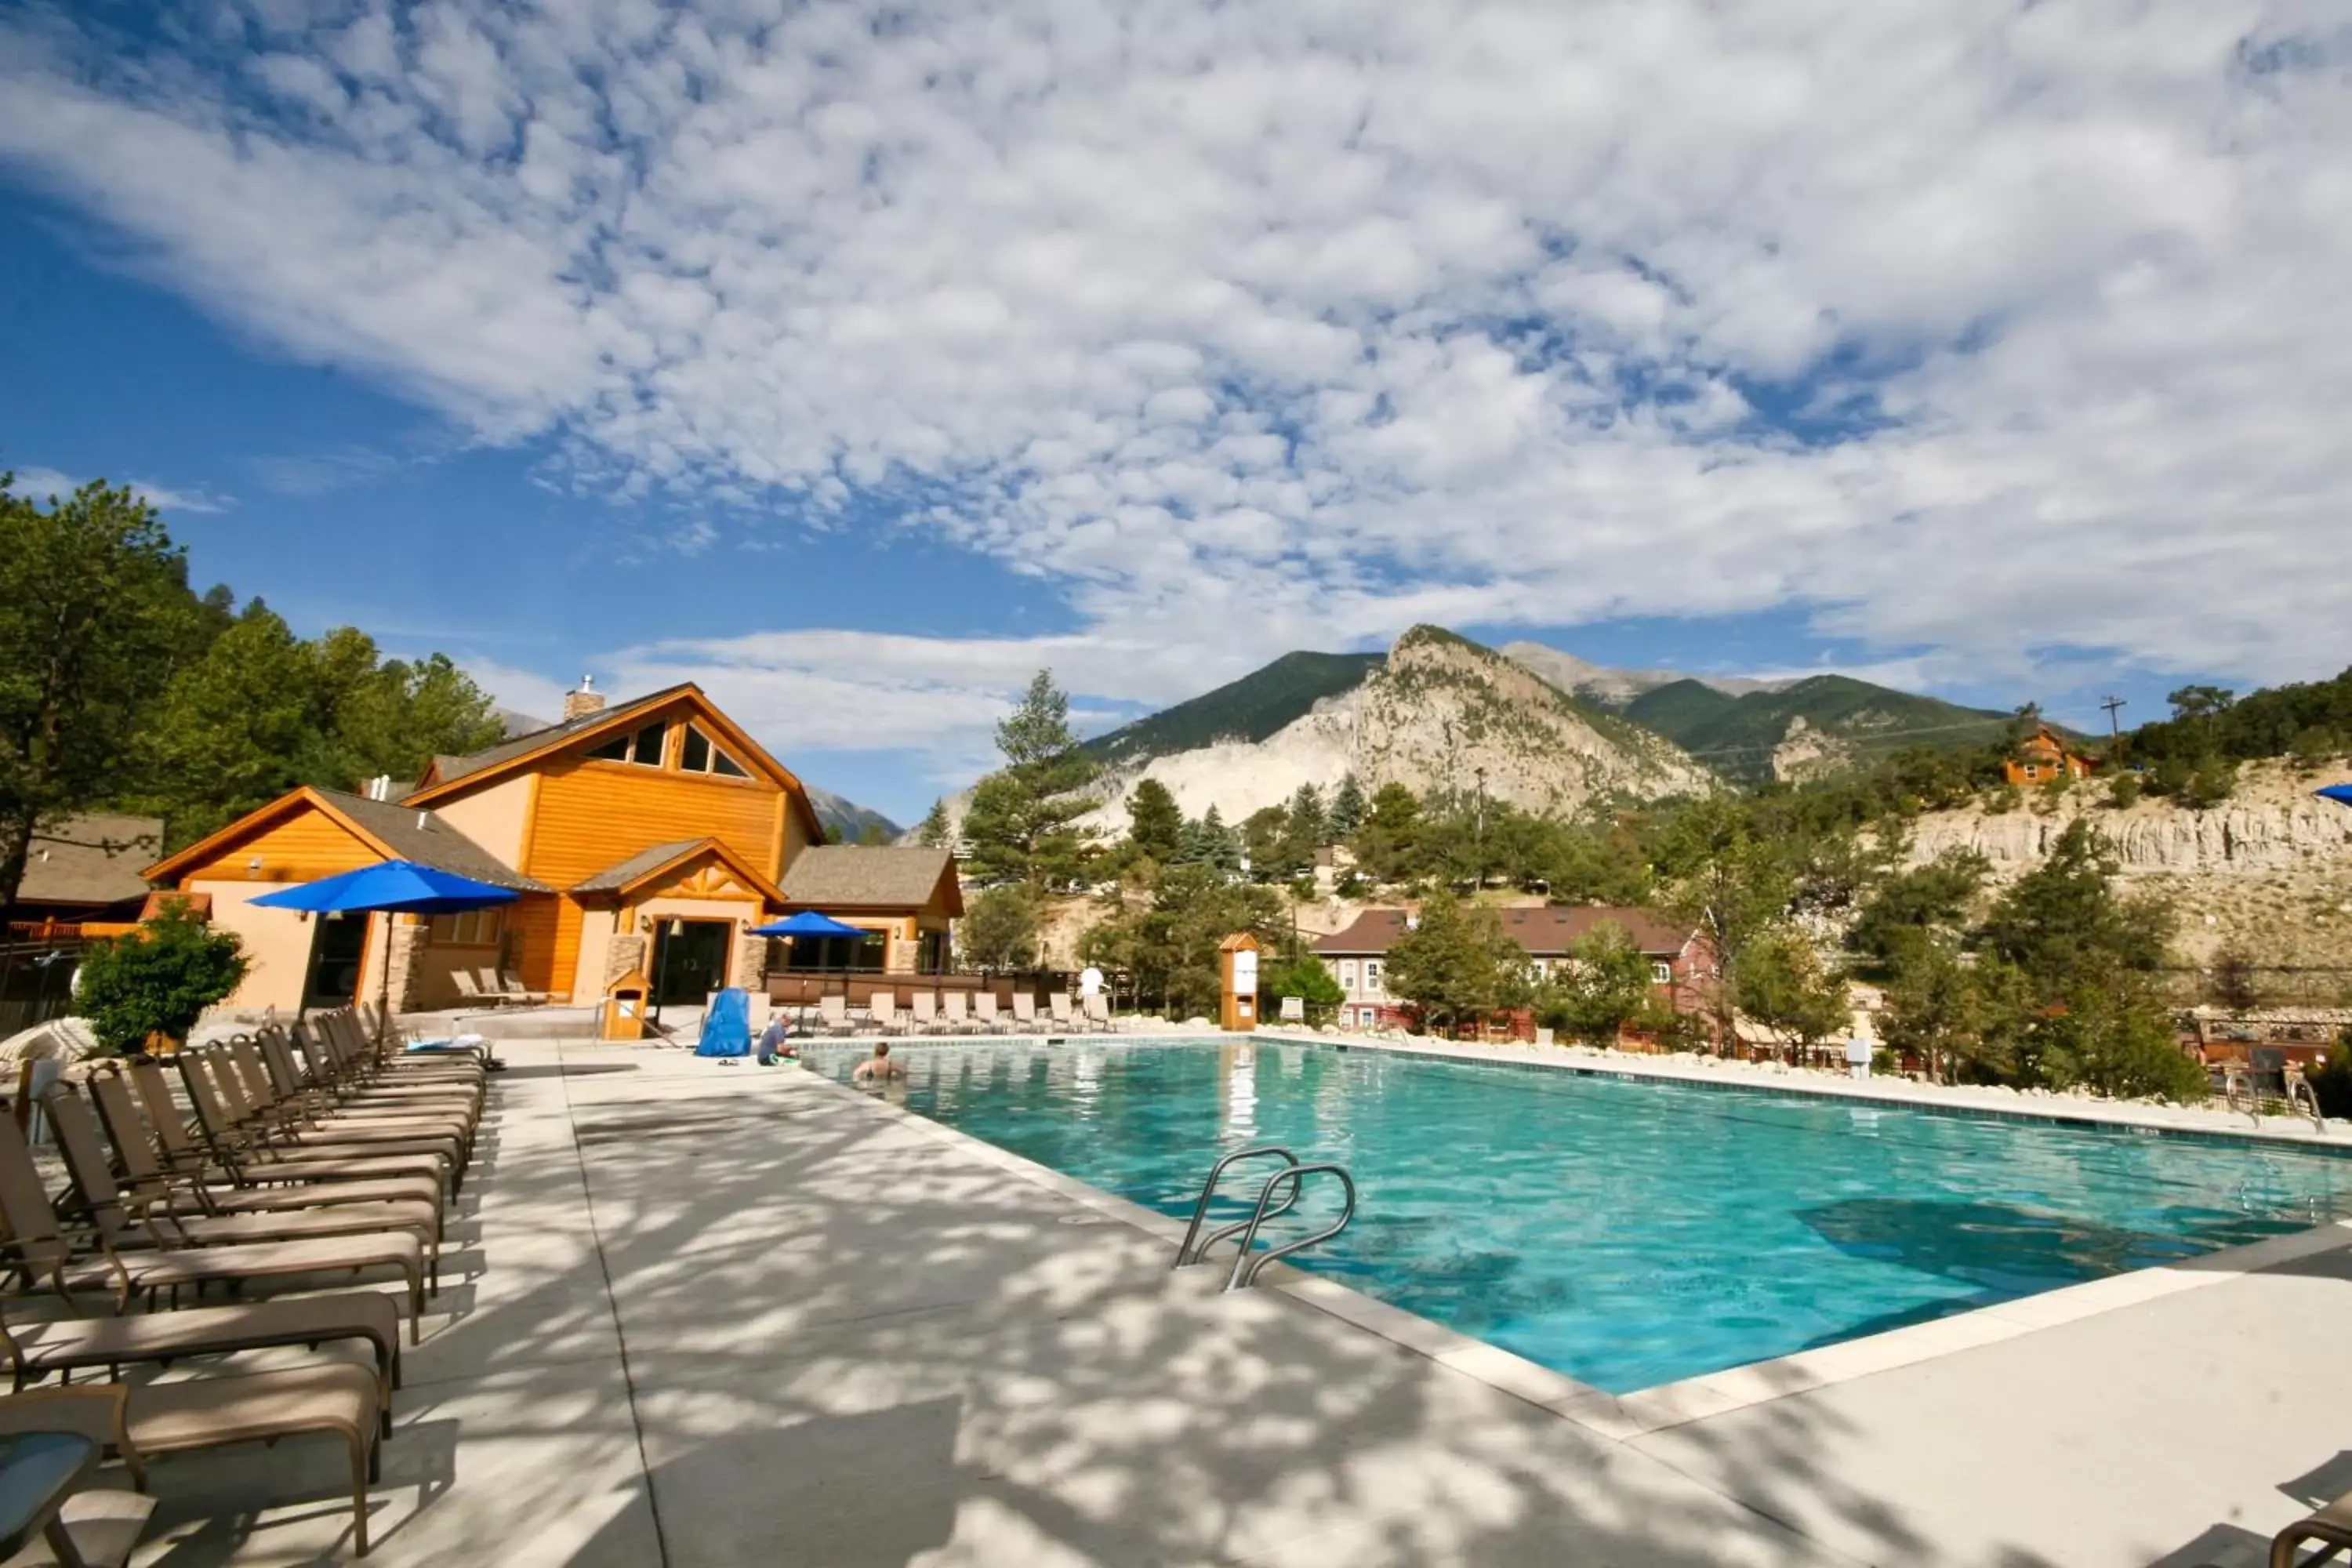 Swimming Pool in Mount Princeton Hot Springs Resort